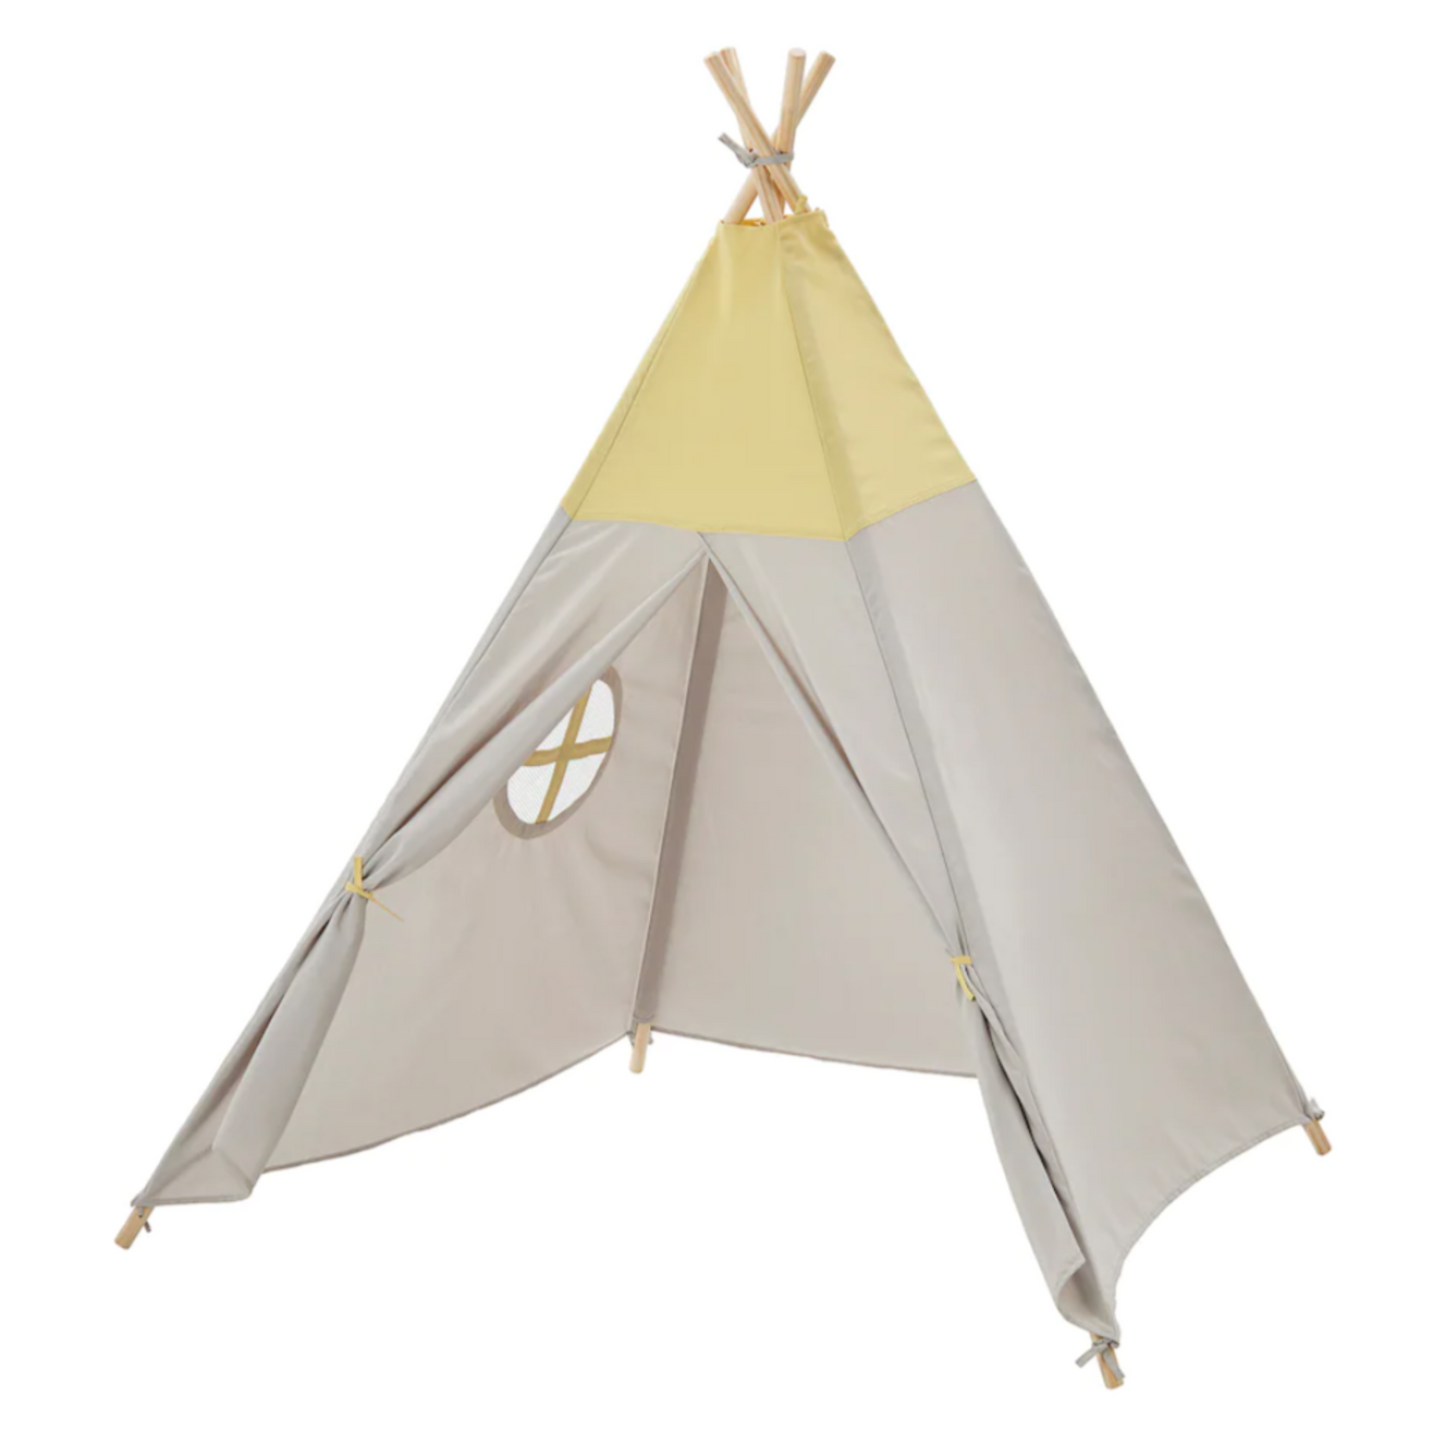 IKEA Hövlig Children's tent (6579336904769)